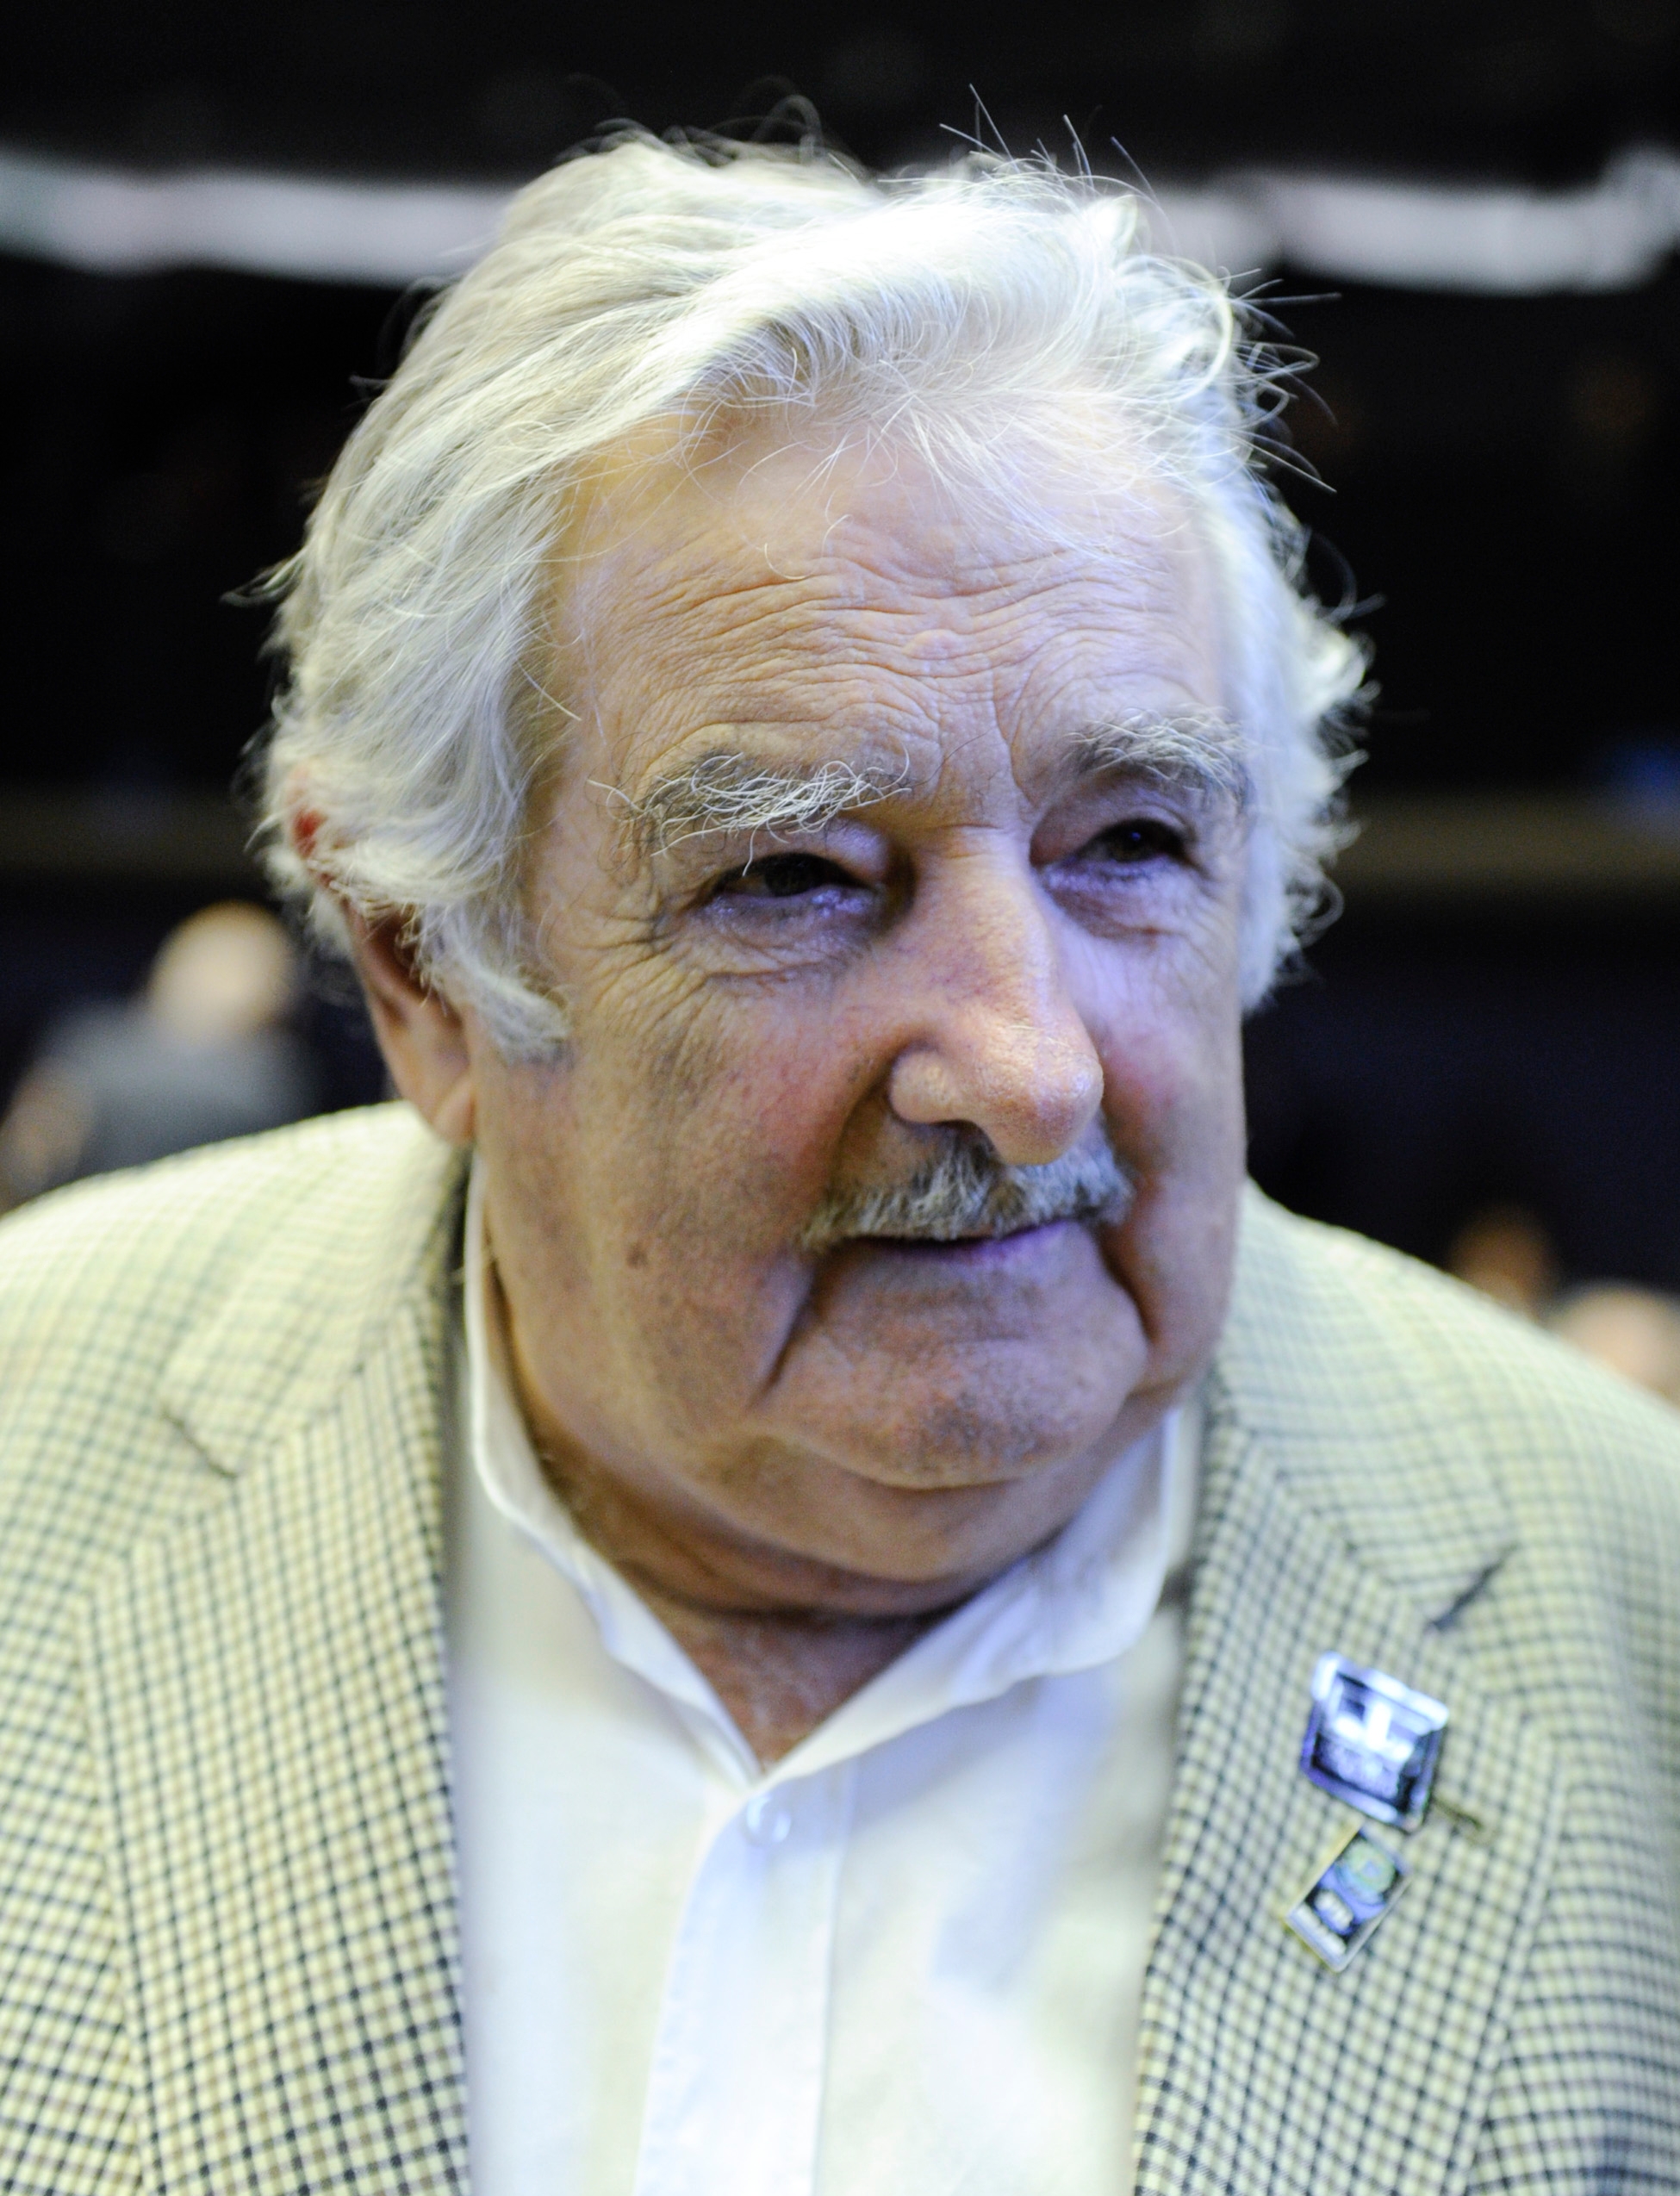 auteur Jose Mujica de la citation J'en ai juste marre de la façon dont les choses sont. Nous sommes à une époque où nous ne pouvons pas vivre sans accepter la logique du marché. La politique contemporaine est une question de pragmatisme à court terme. Nous avons abandonné la religion et la philosophie ... ce qu'il nous reste, c'est l'automatisation de faire ce que le marché nous dit.